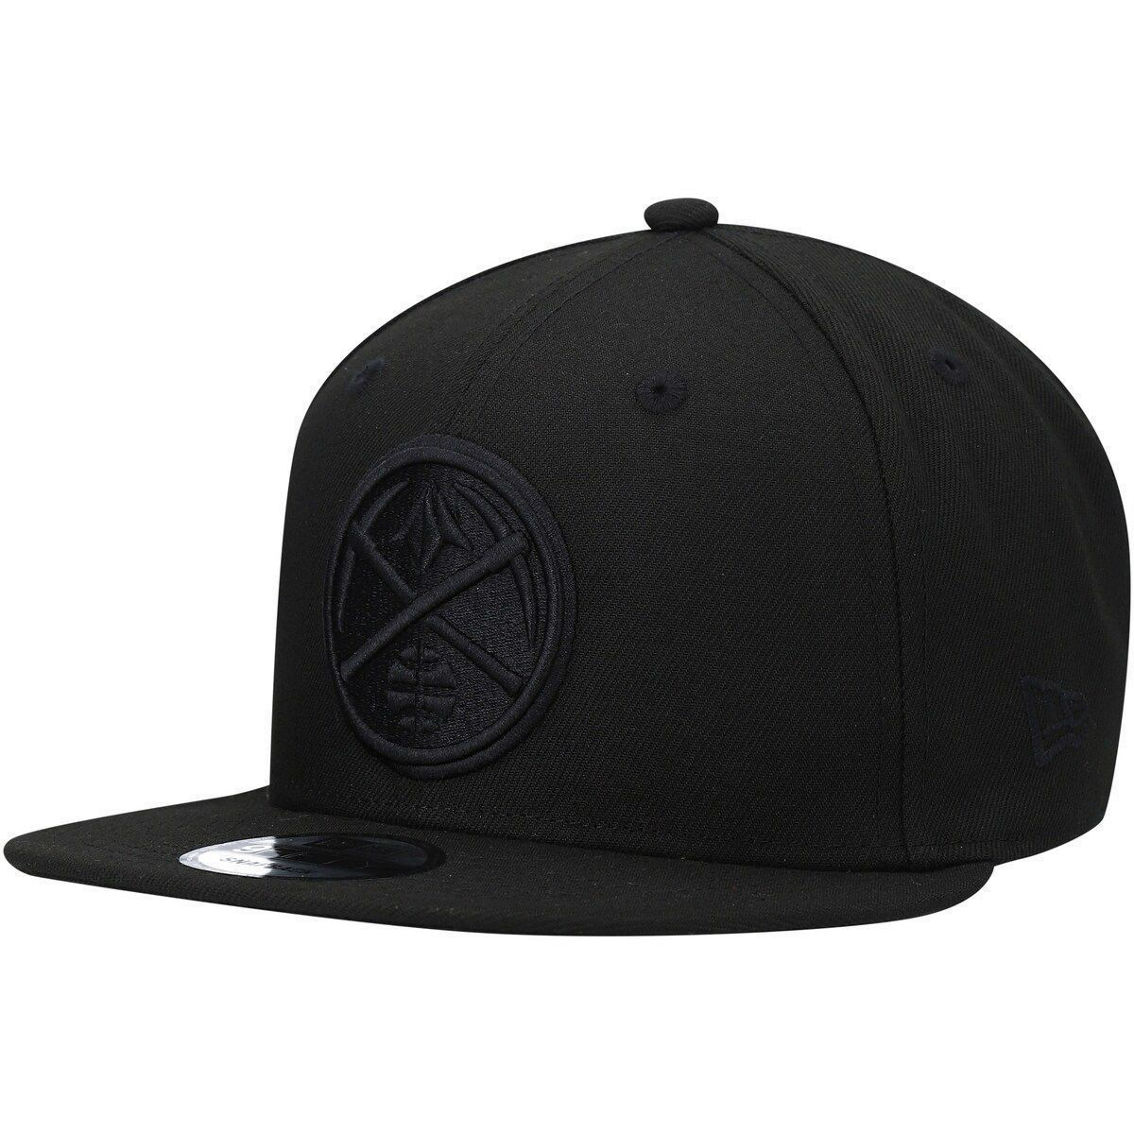 New Era Men's Denver Nuggets Black On Black 9FIFTY Snapback Hat - Image 2 of 4